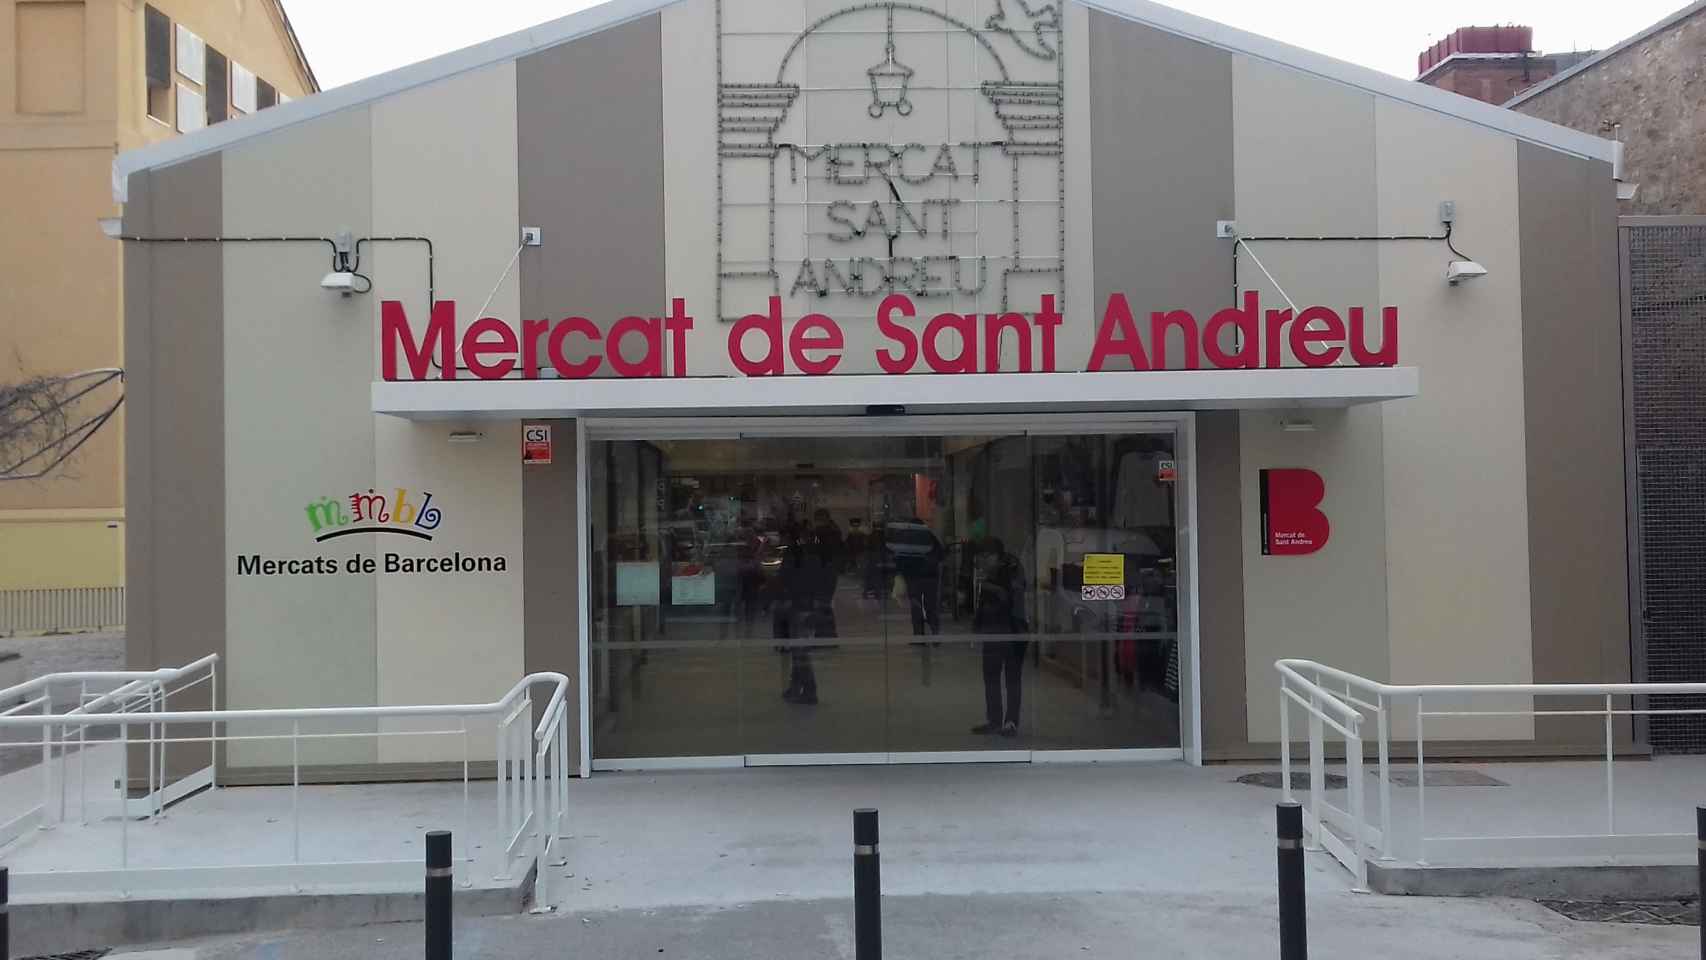 Carpa del mercado provisional de Sant Andreu instalada junto a las nuevas oficinas municipales / JORDI SUBIRANA